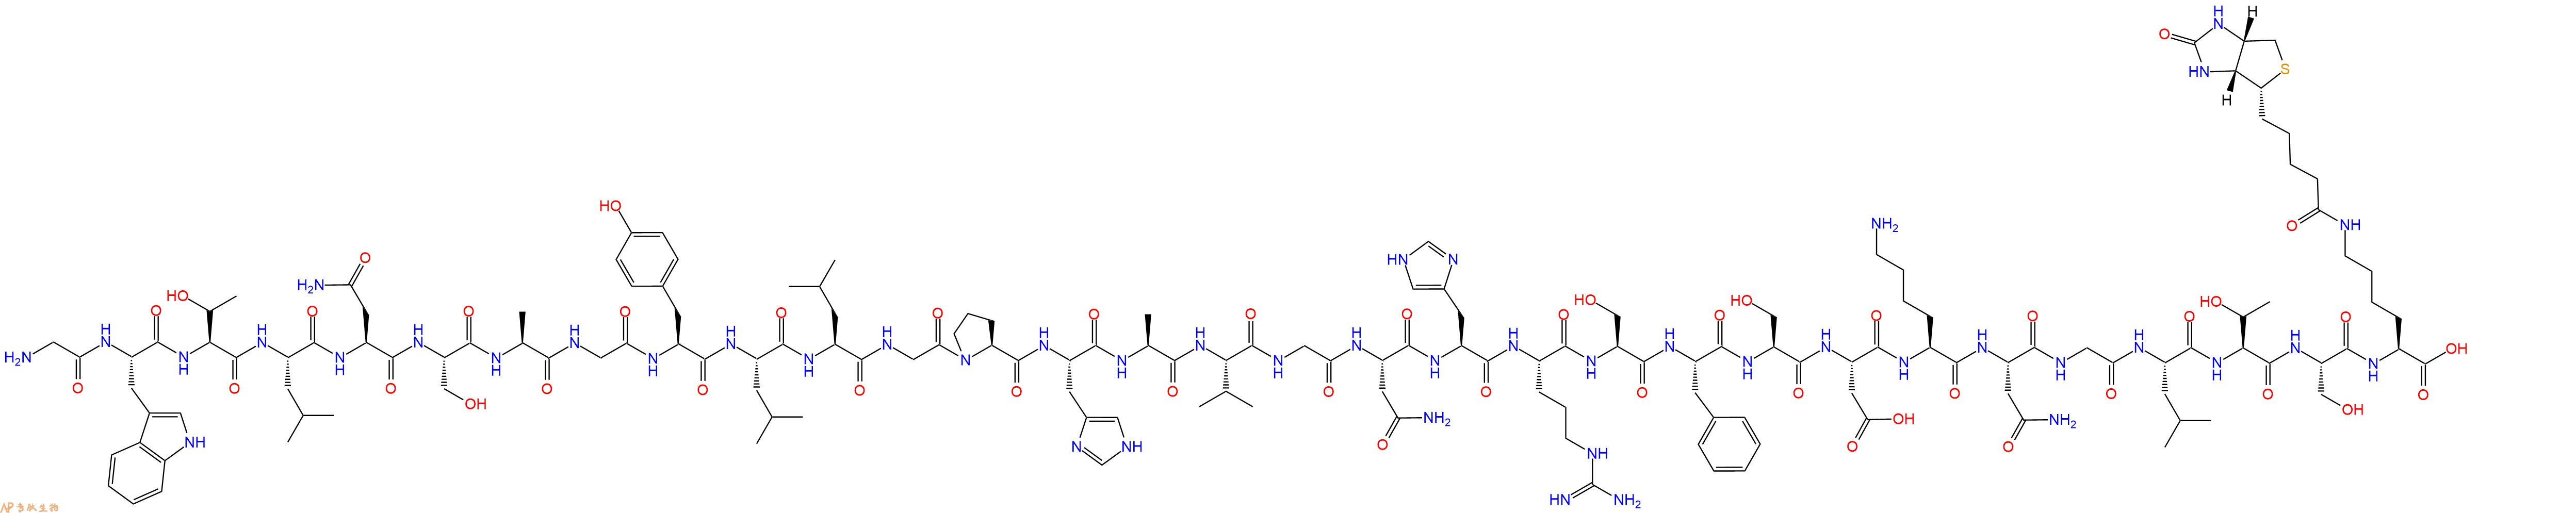 专肽生物产品甘丙肽Galanin-Lys(Biotin), human